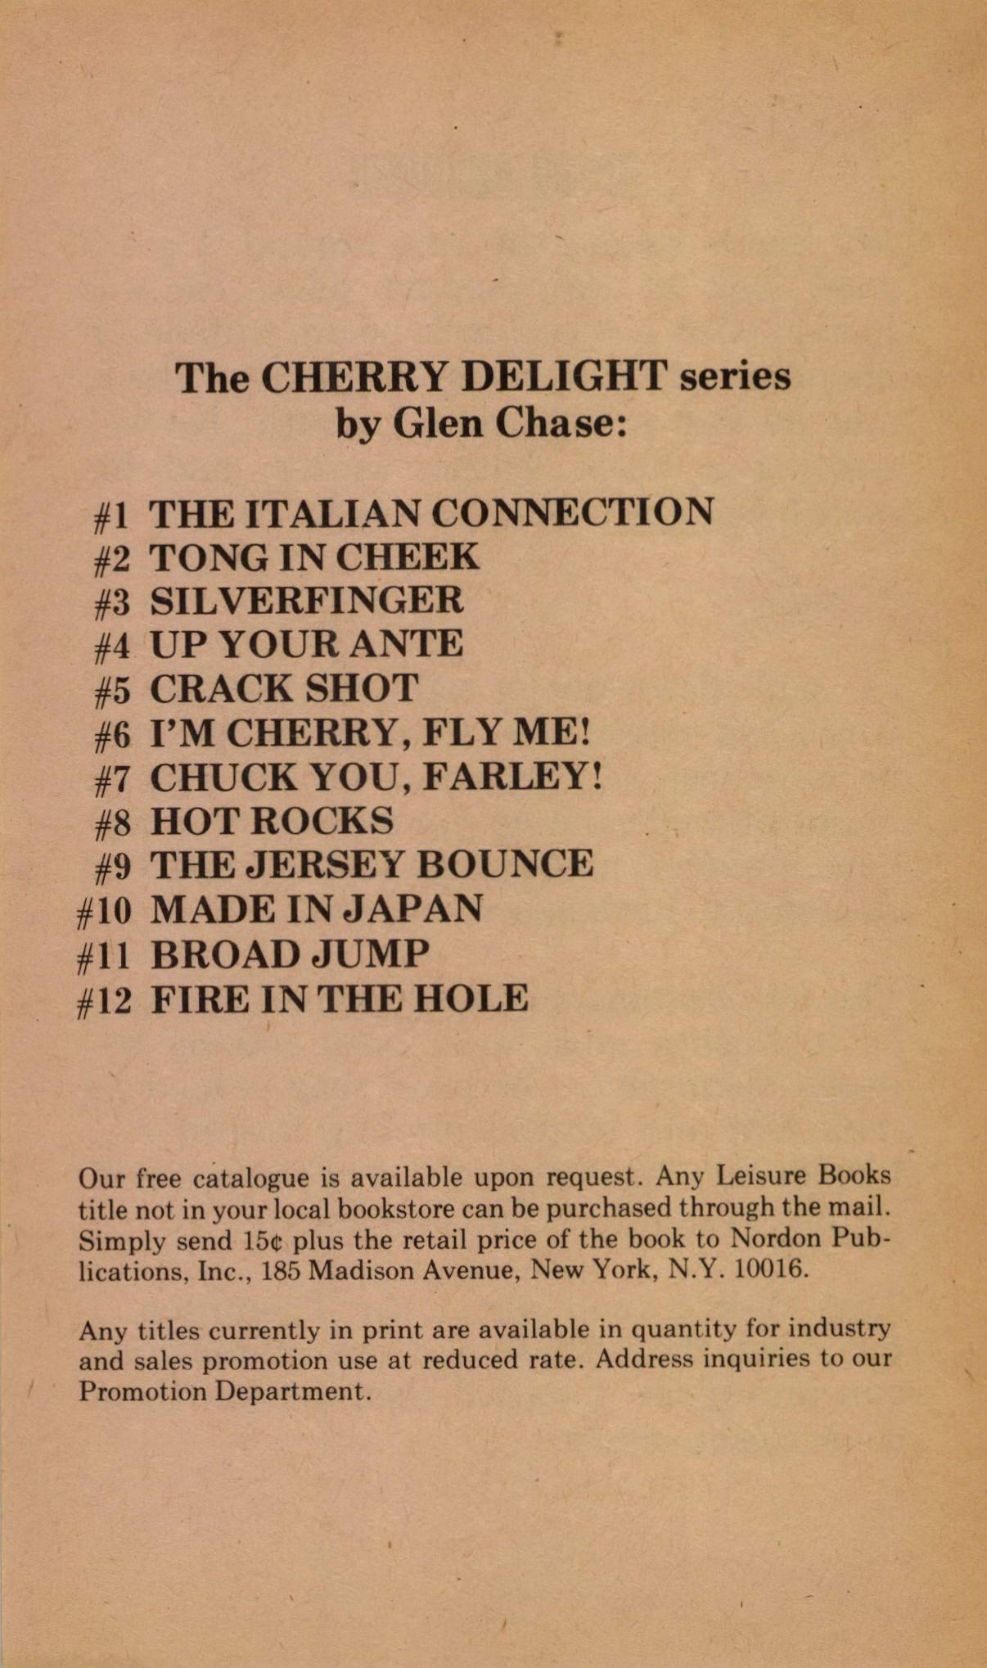 Cherry Delight 12 Fire in the Hole Glen Chase Gardner F Fox 003.jpg